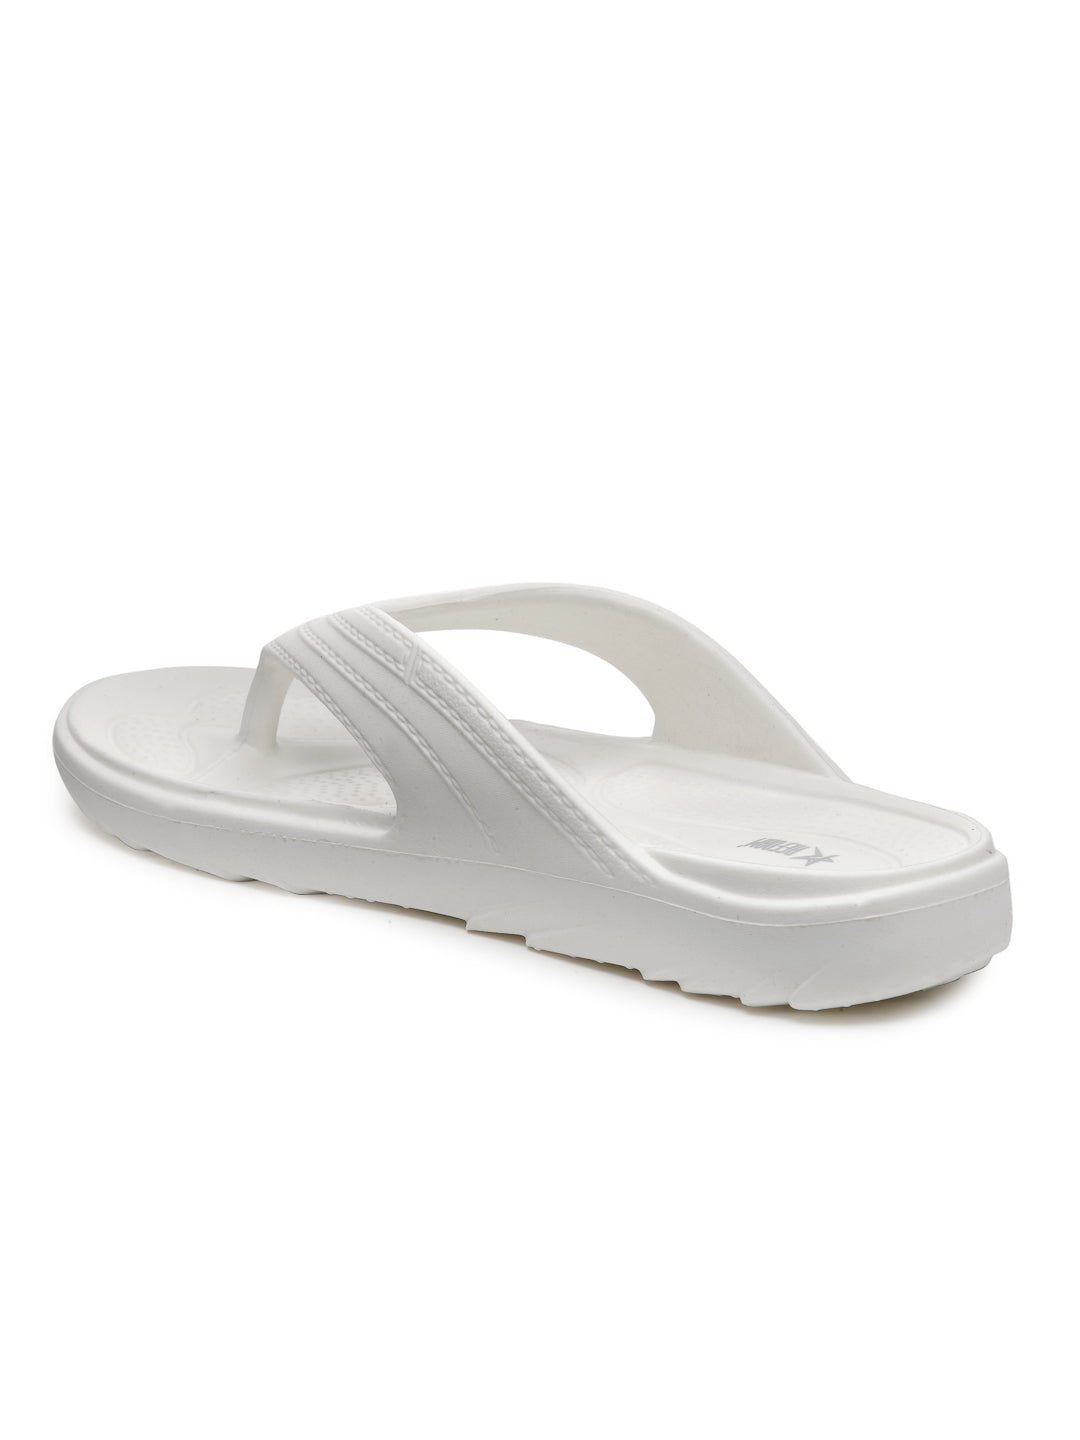 Off White Solid EVA Slip-On Sliders For Women